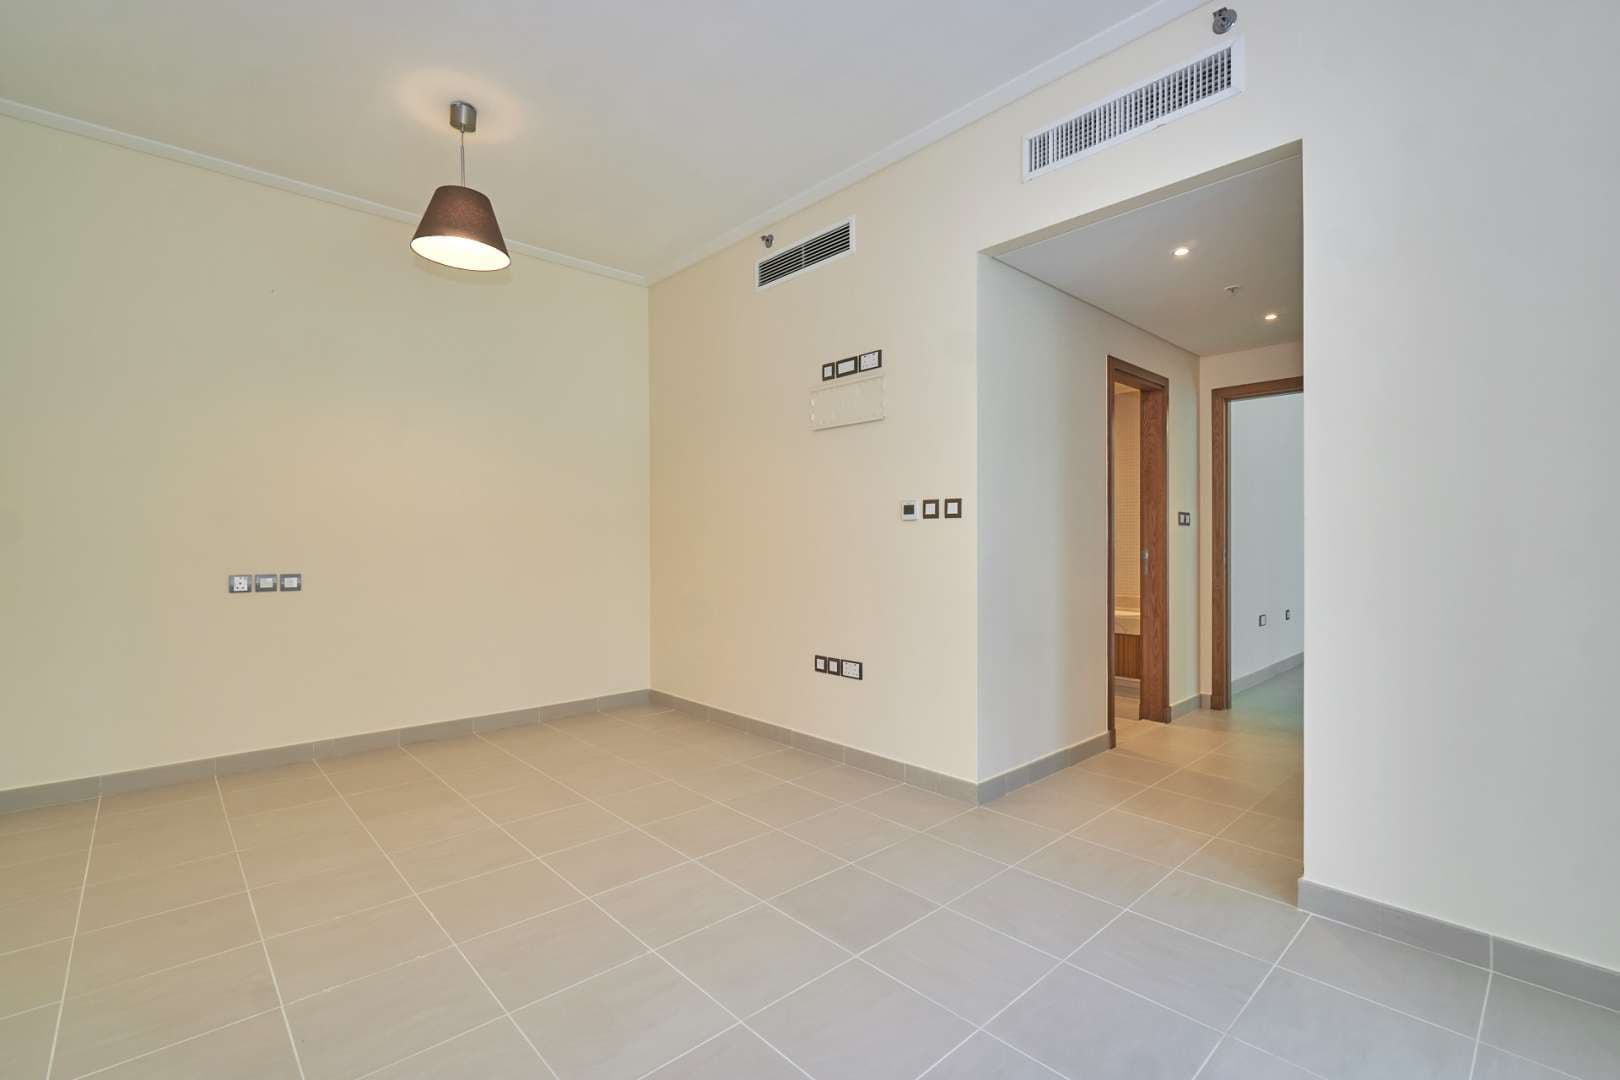 2 Bedroom Apartment For Rent Marina Promenade Lp07324 285a0c0471c76400.jpg